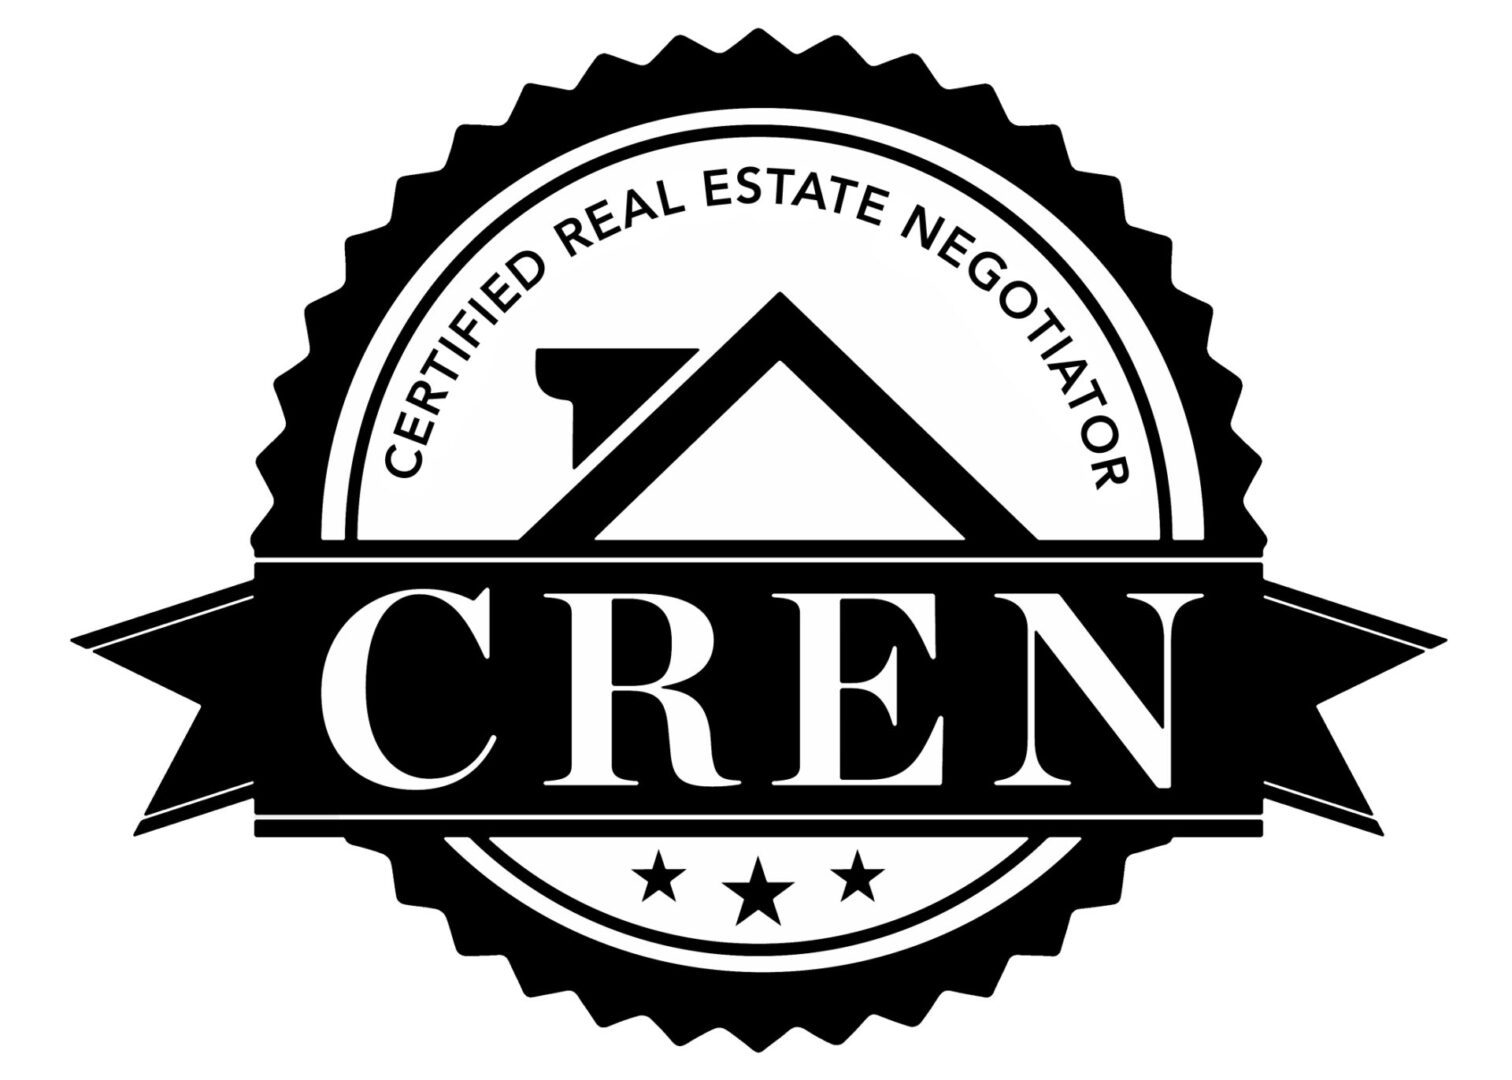 Cren real estate negotiator logo.